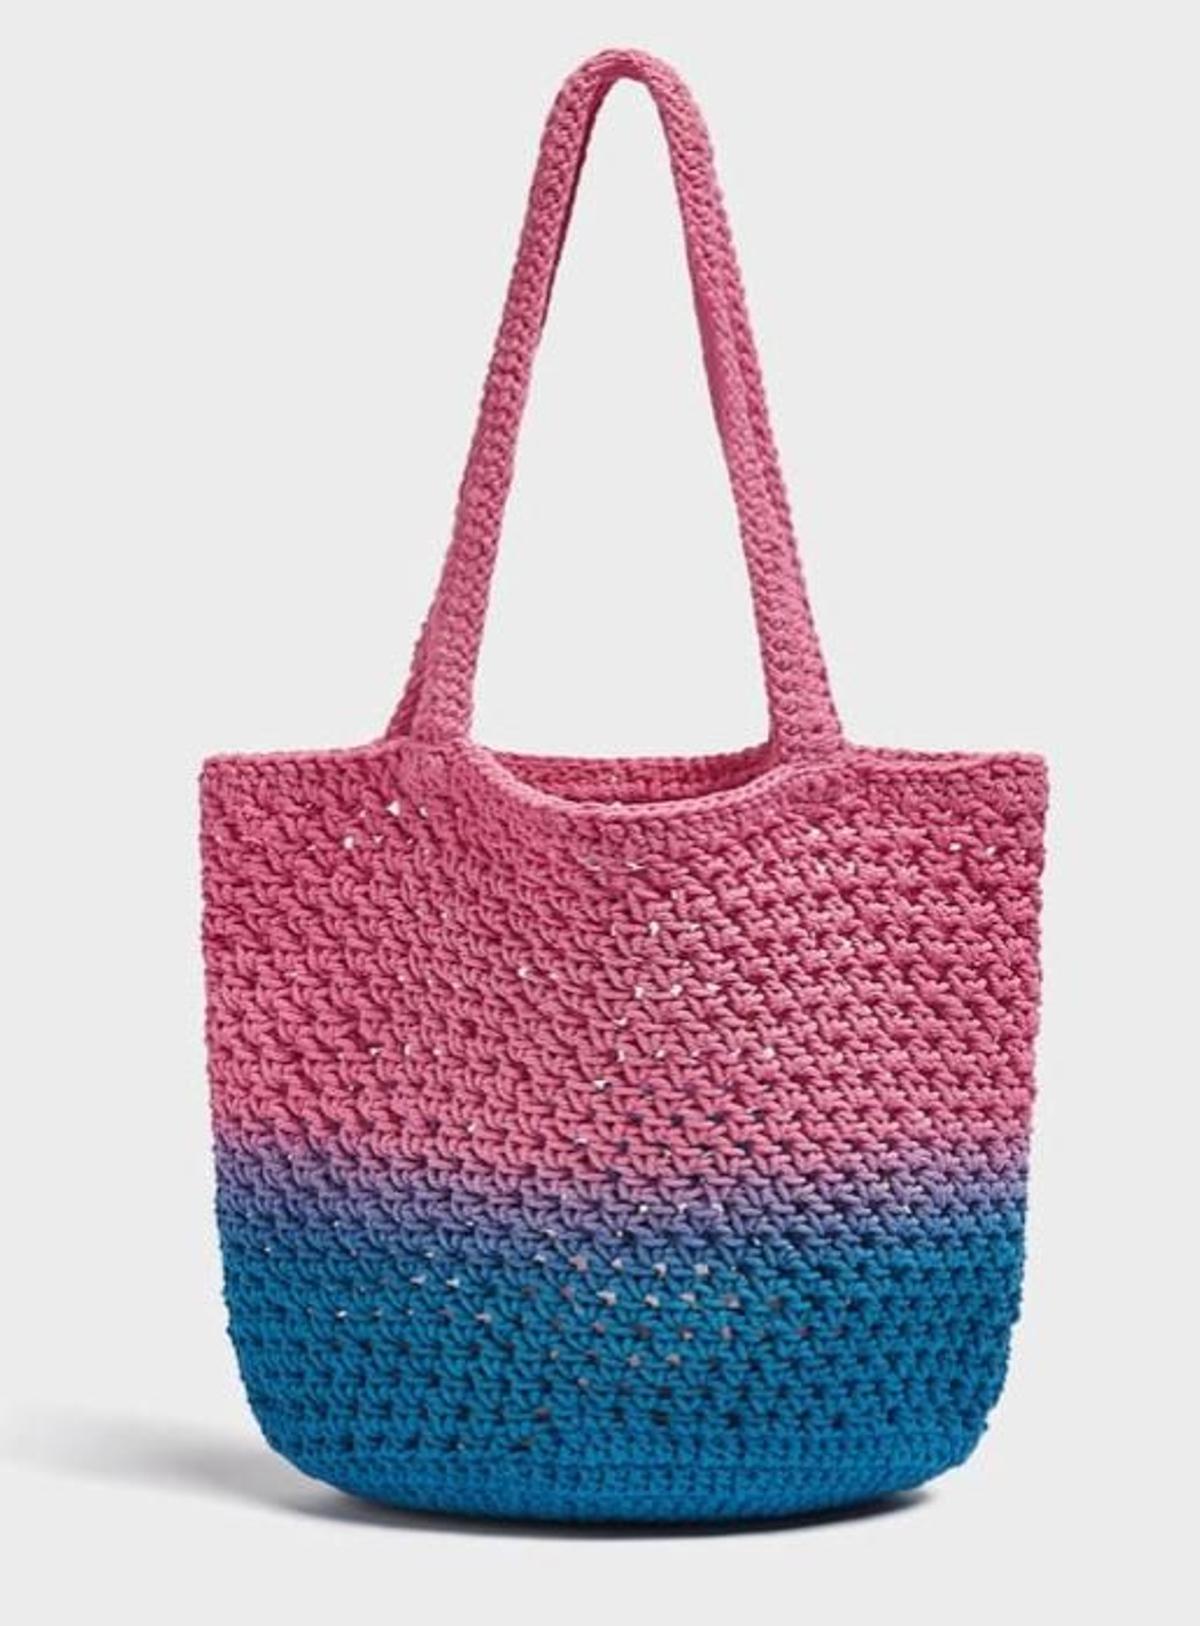 Los 17 bolsos de crochet más bonitos para el verano